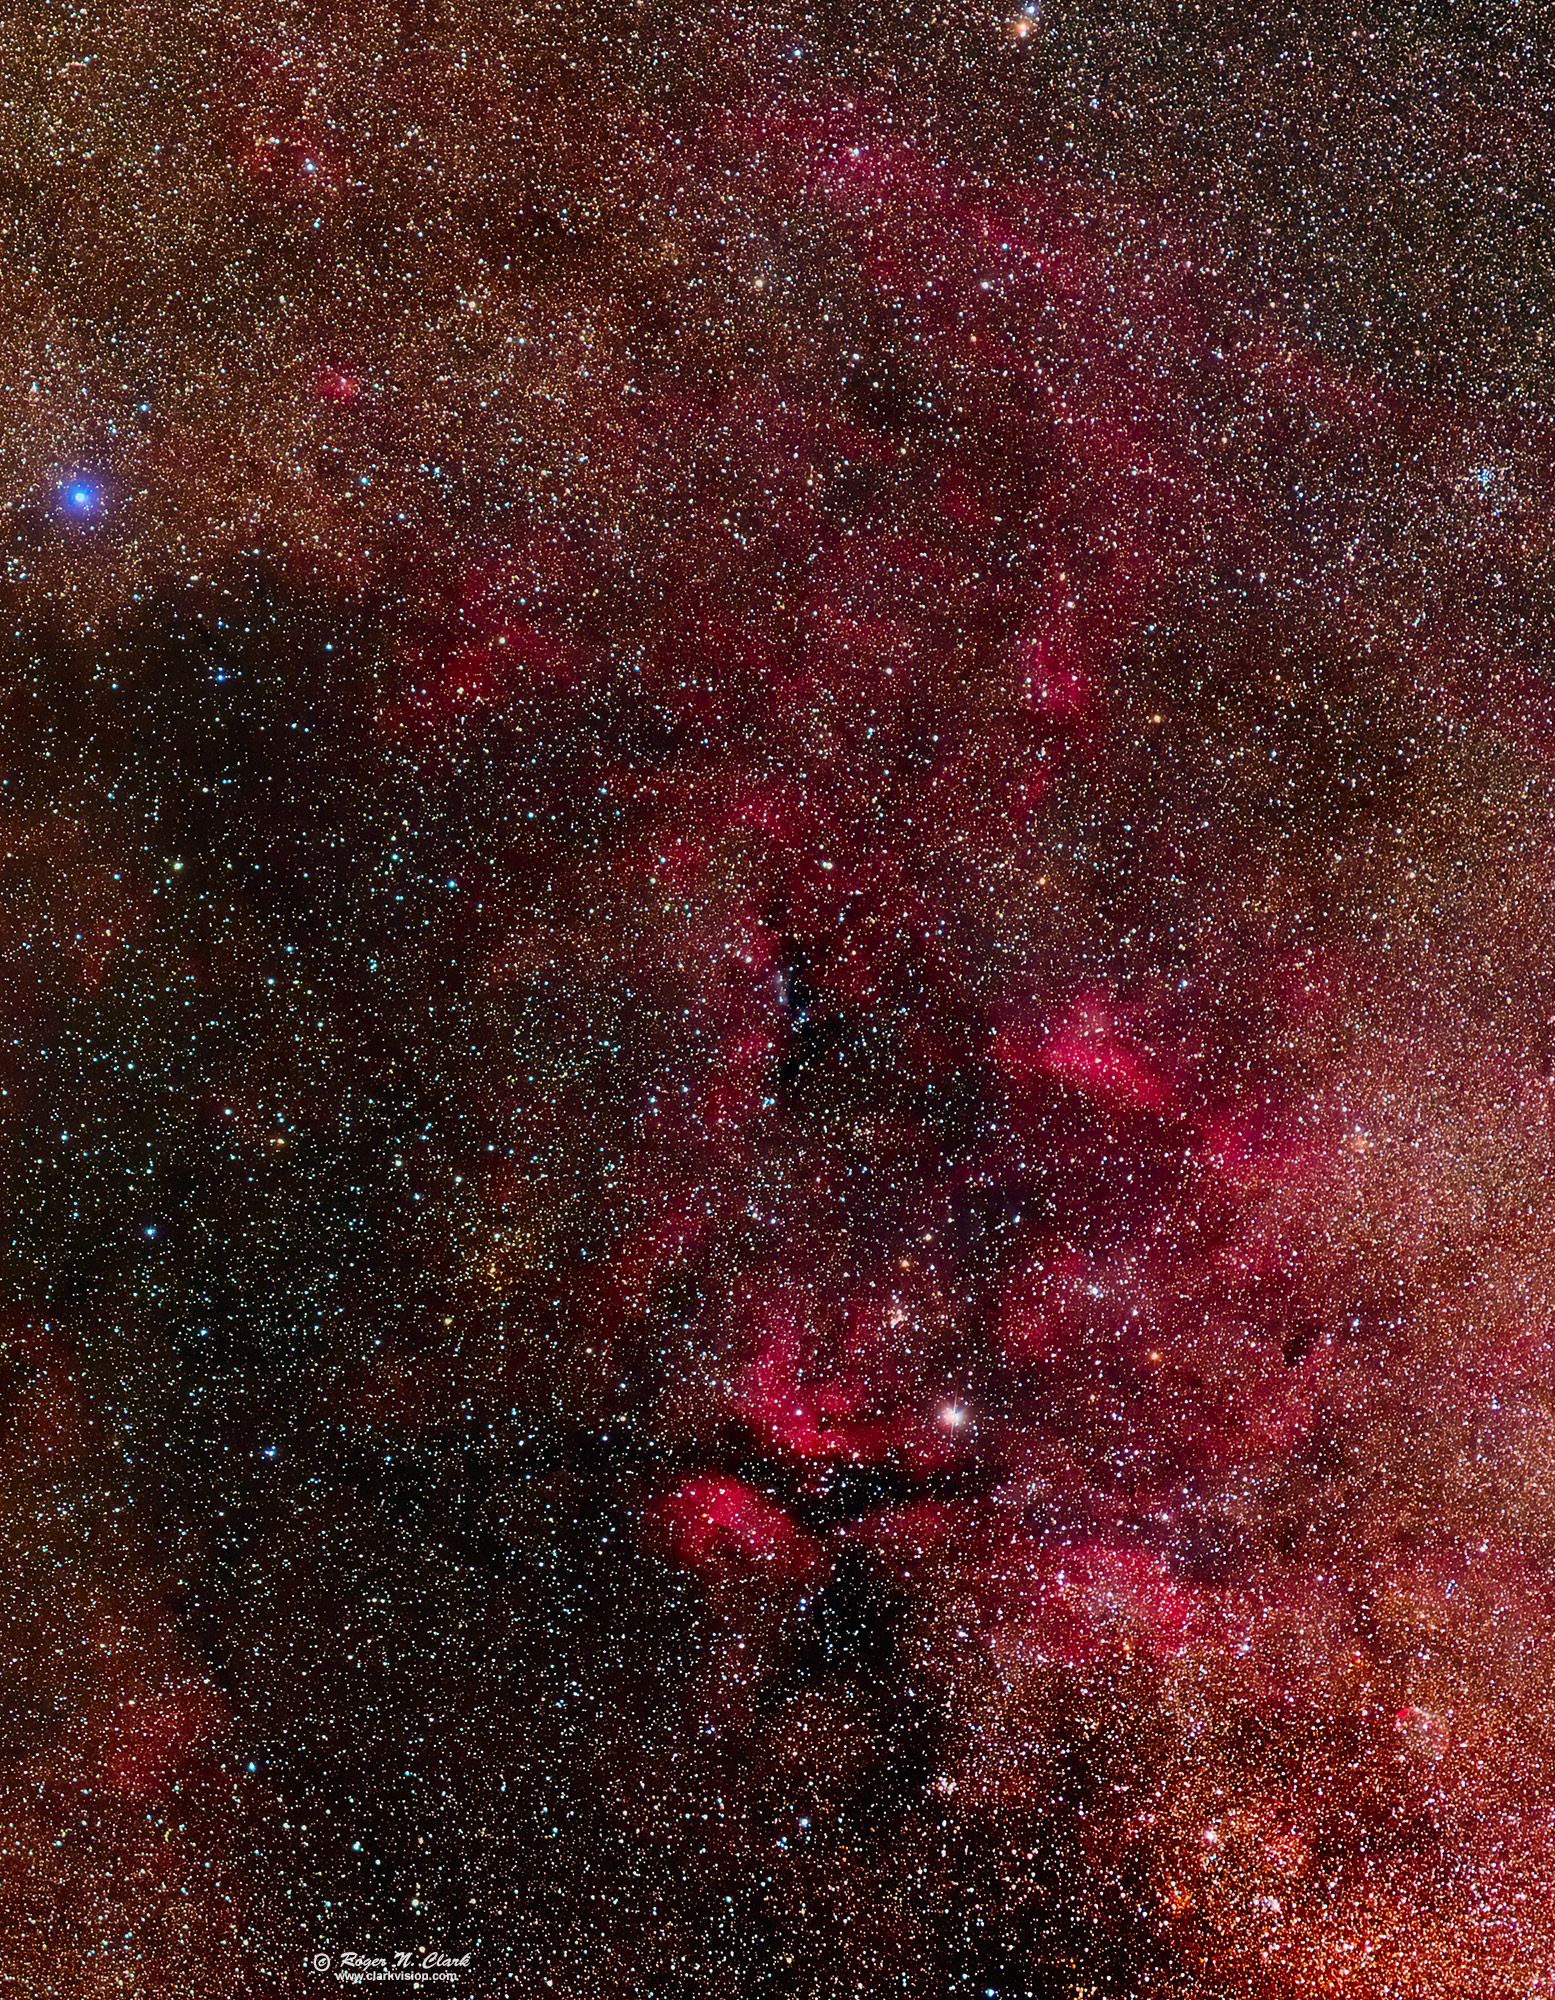 image cygnus-105mm-6d2-rnclark-img4840-4929-c08-11-2018-f-c2-.66x-2000vs.jpg is Copyrighted by Roger N. Clark, www.clarkvision.com